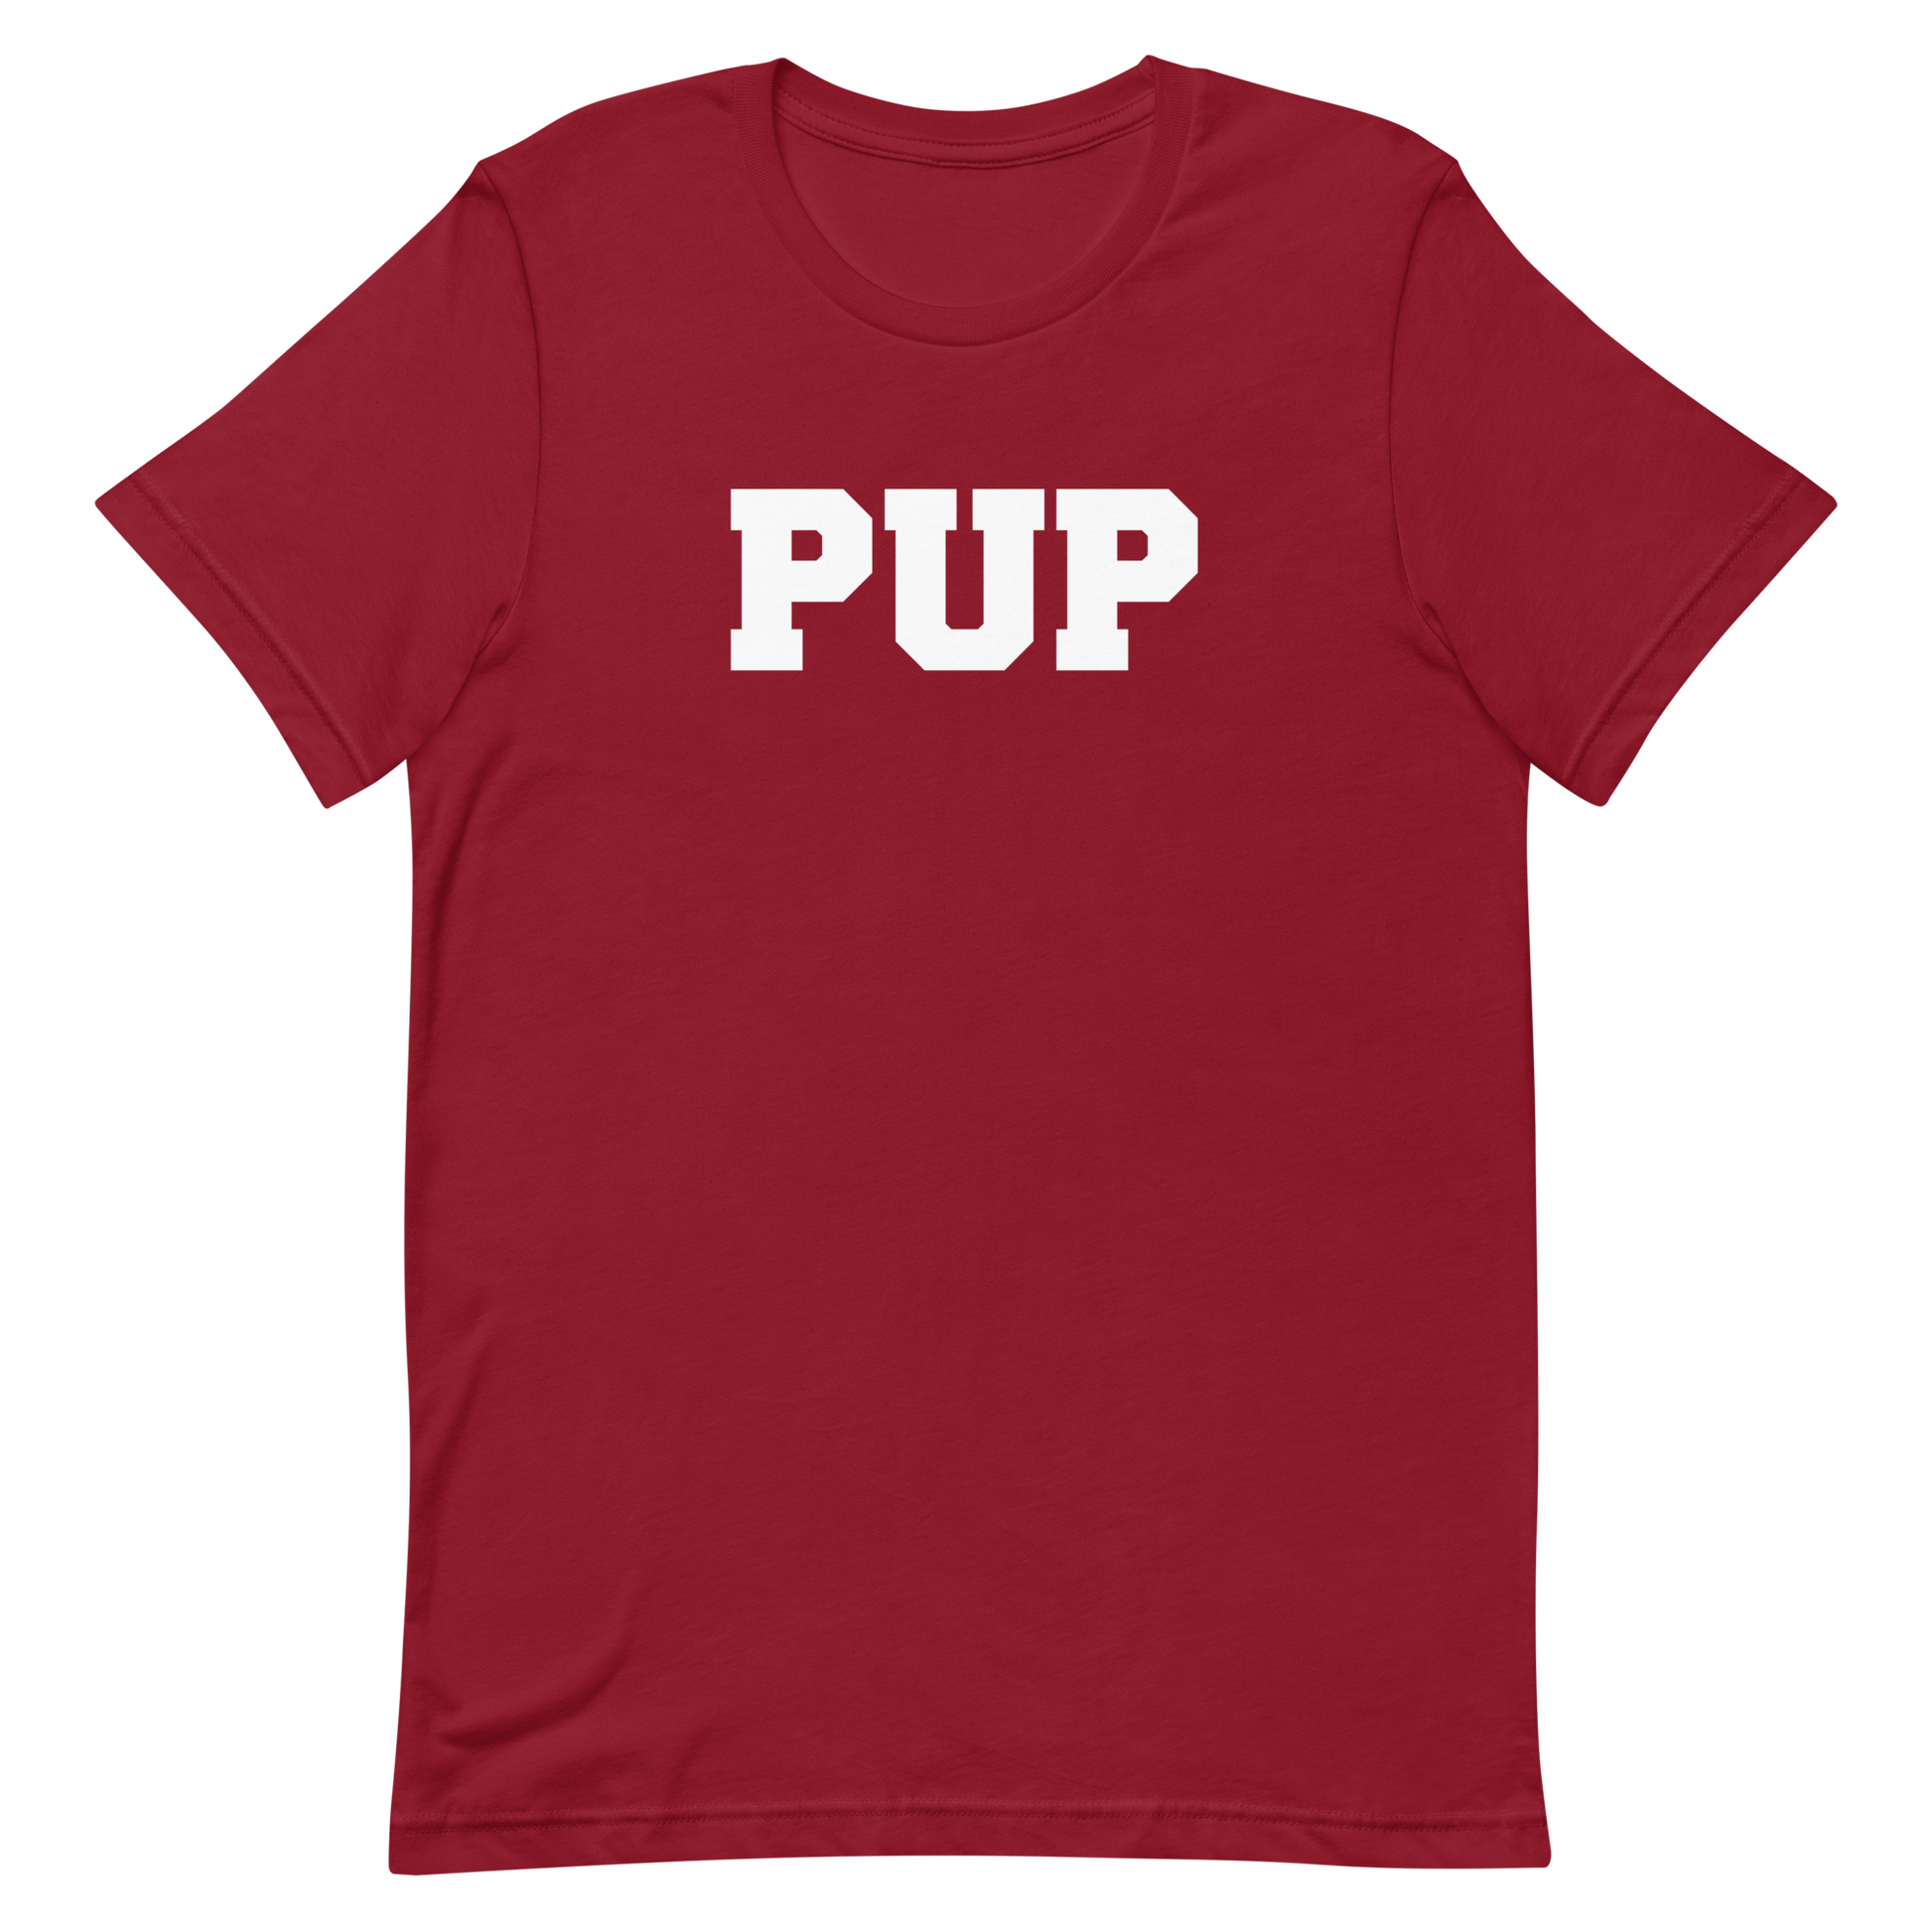 Pup T-Shirt - Cardinal